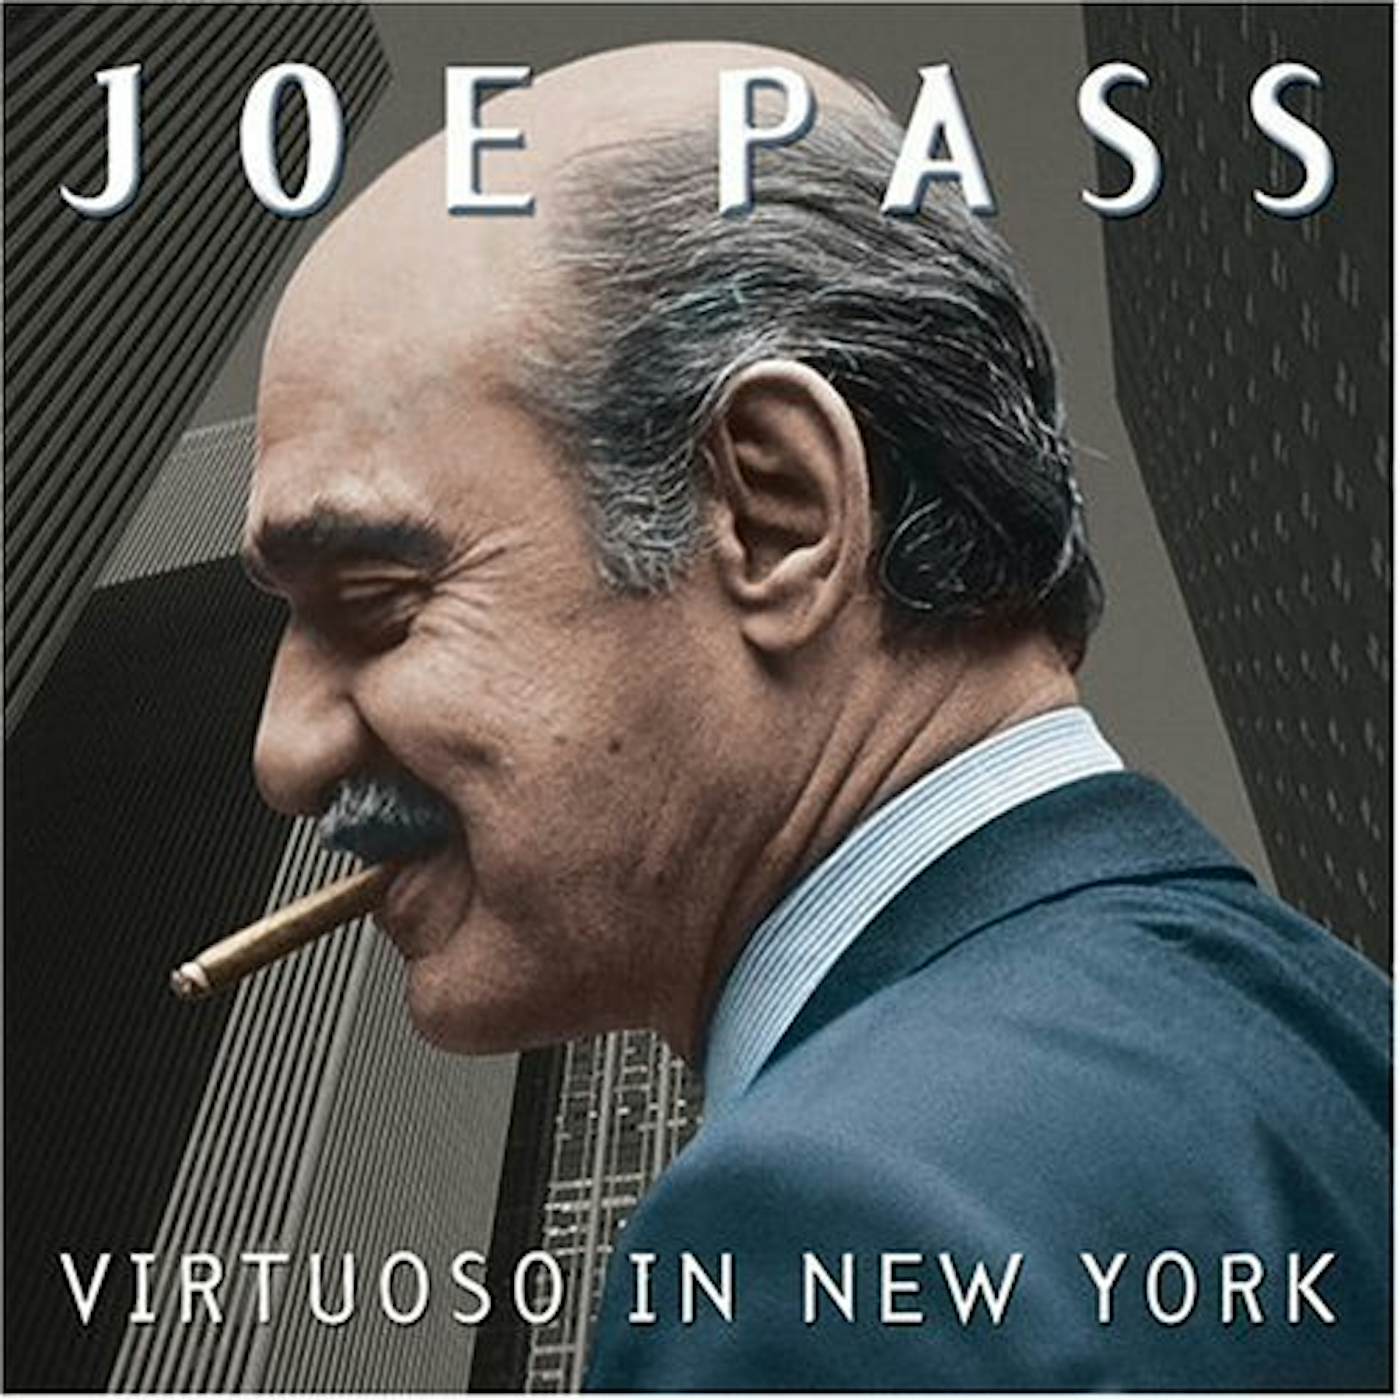 Joe Pass VIRTUOSO IN NEW YORK CD